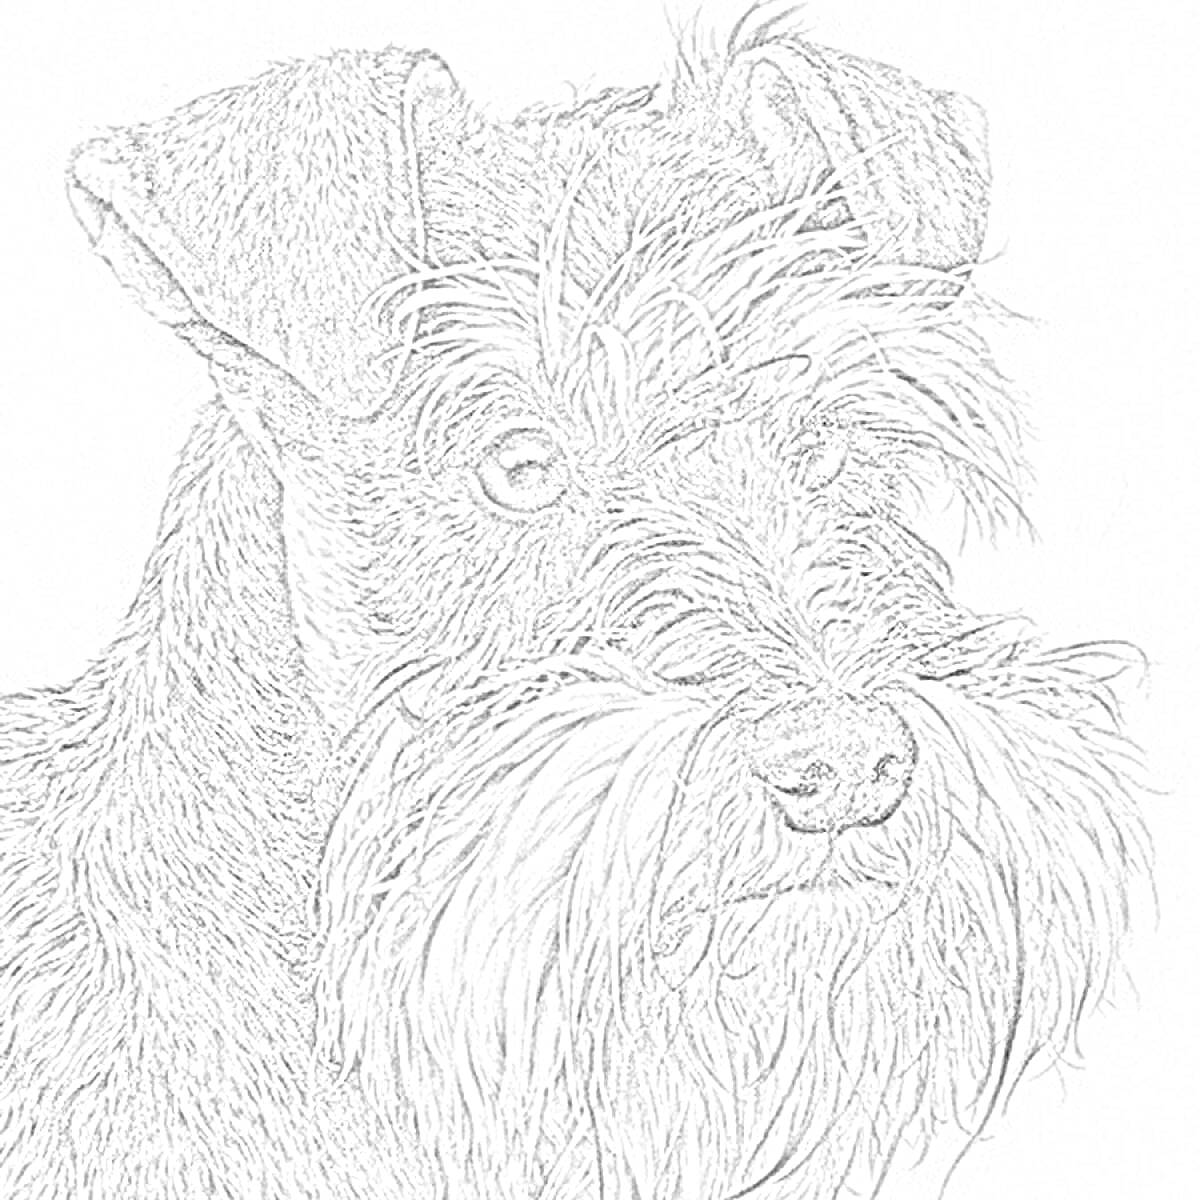 Раскраска Портрет цвергшнауцера крупным планом с раздвоенными ушами и густой бородой